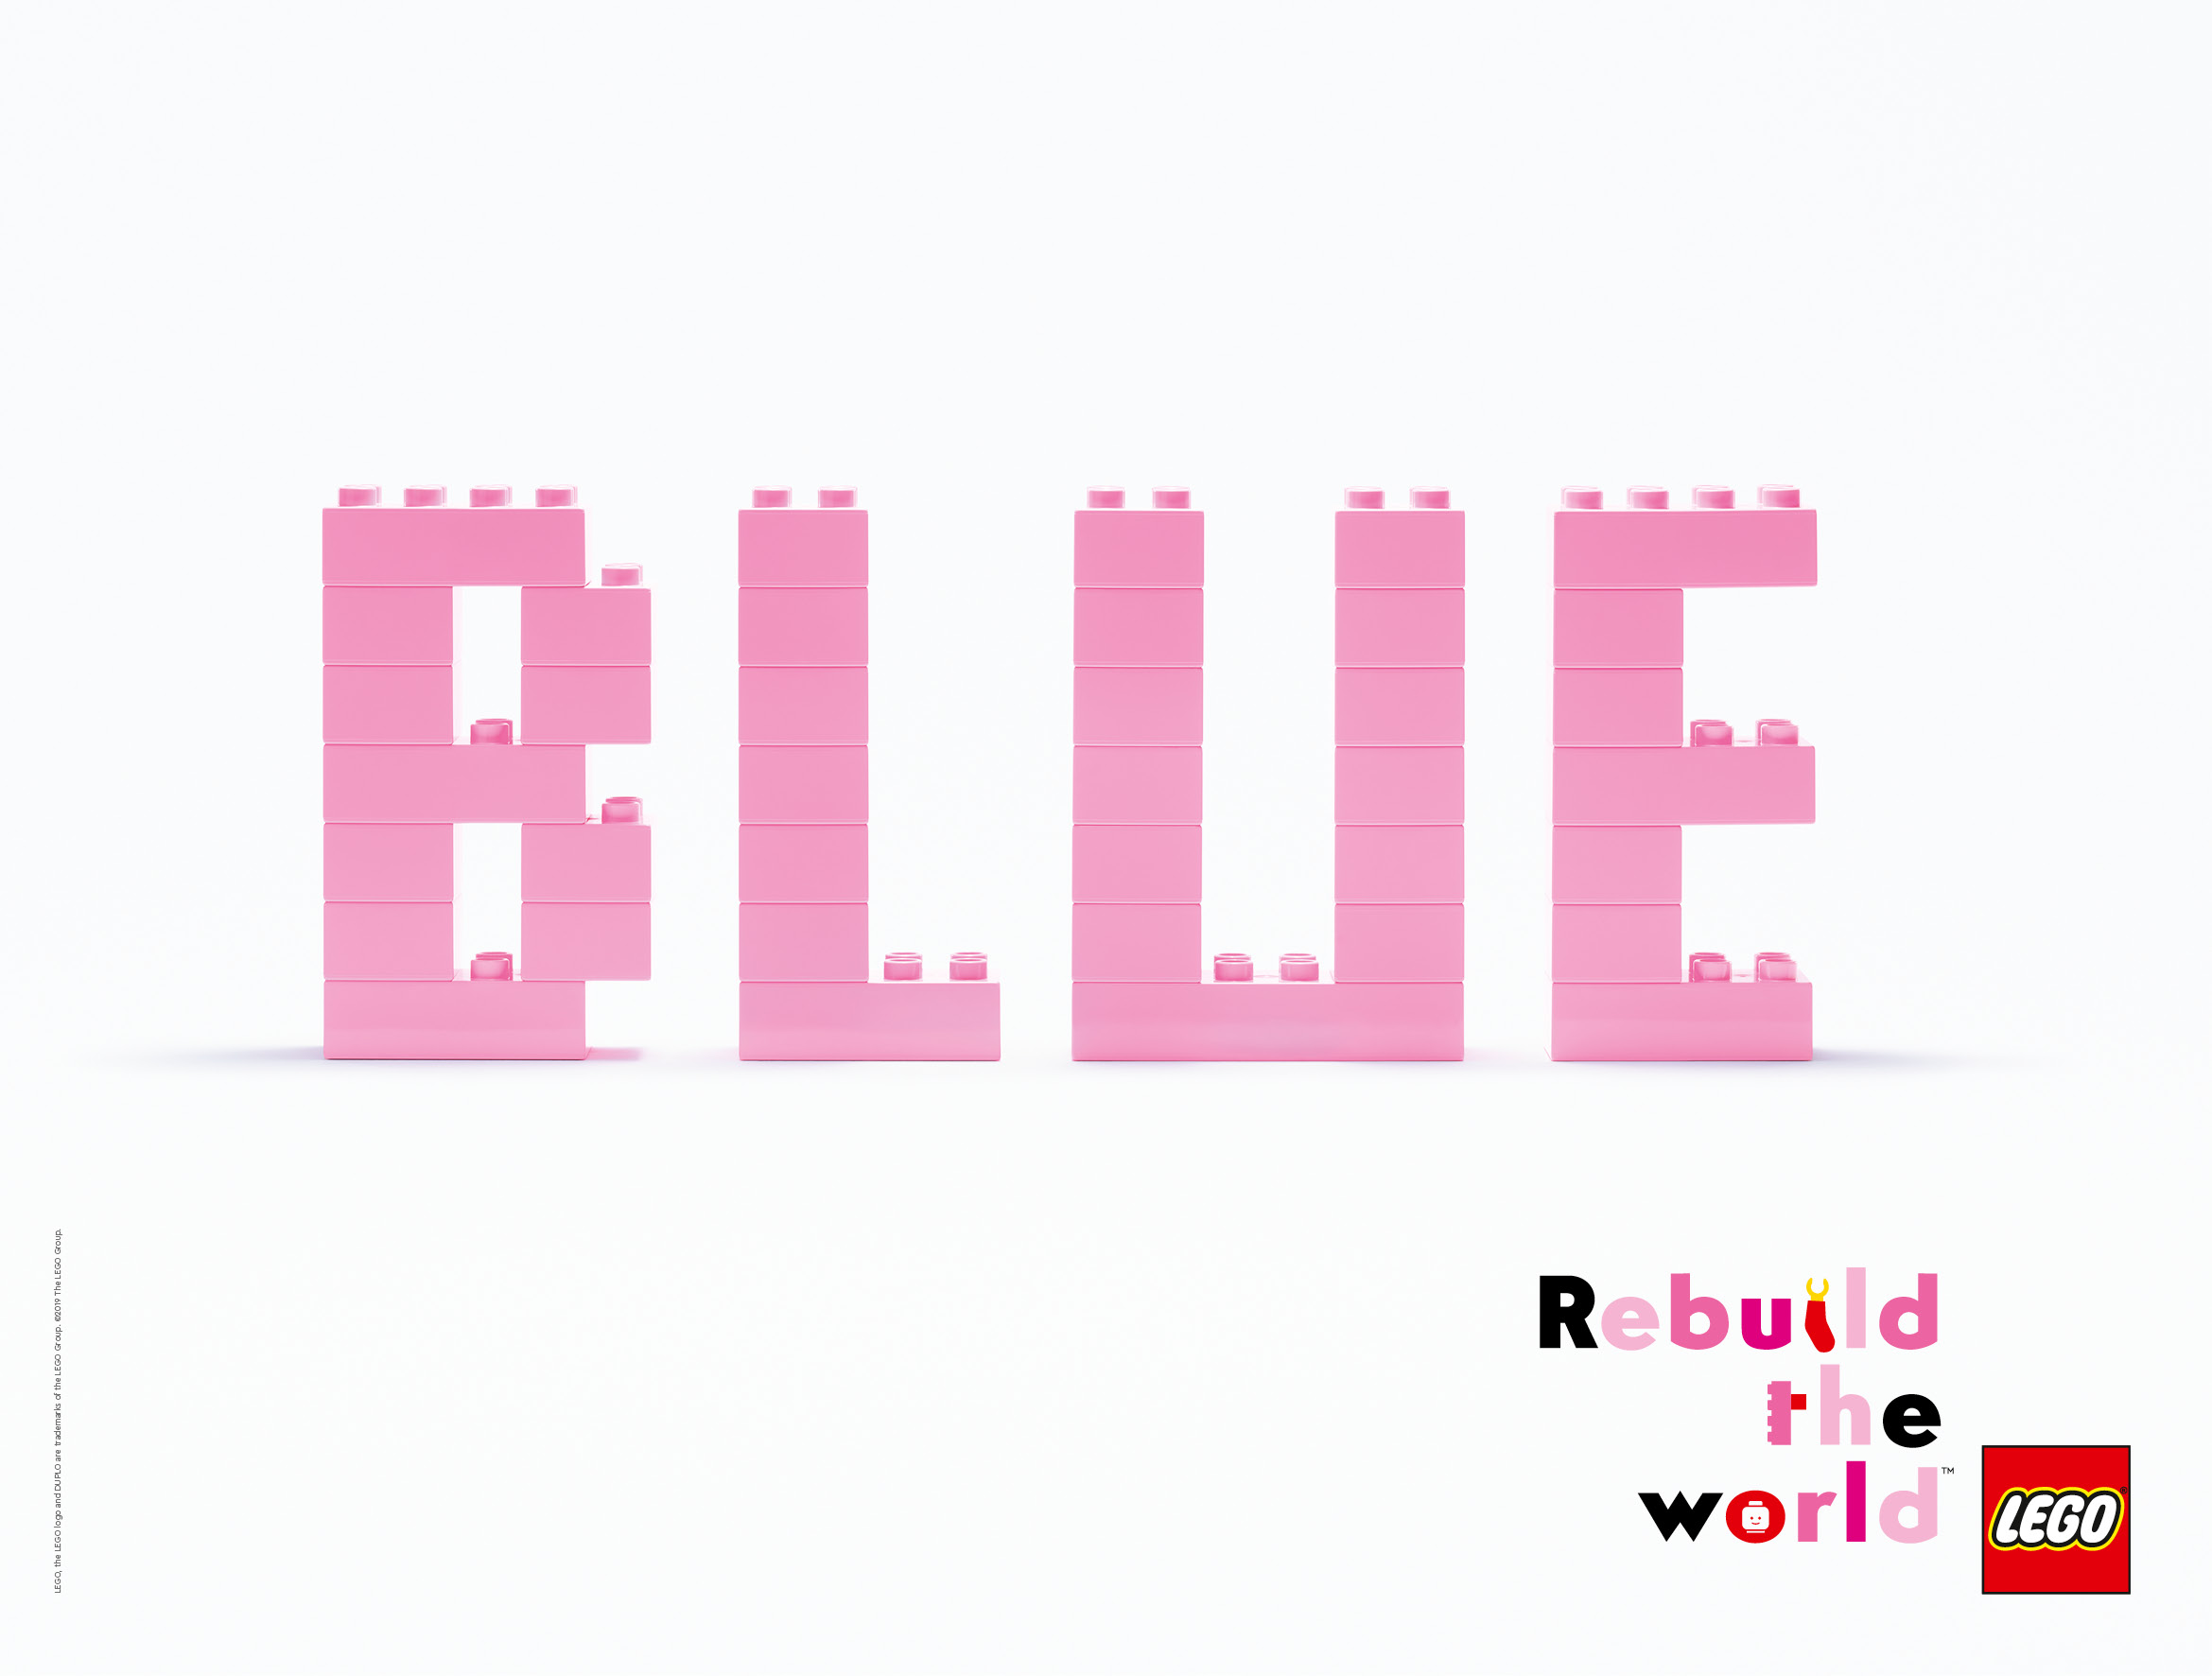 Rebuild the world (Vía Pública Digital)